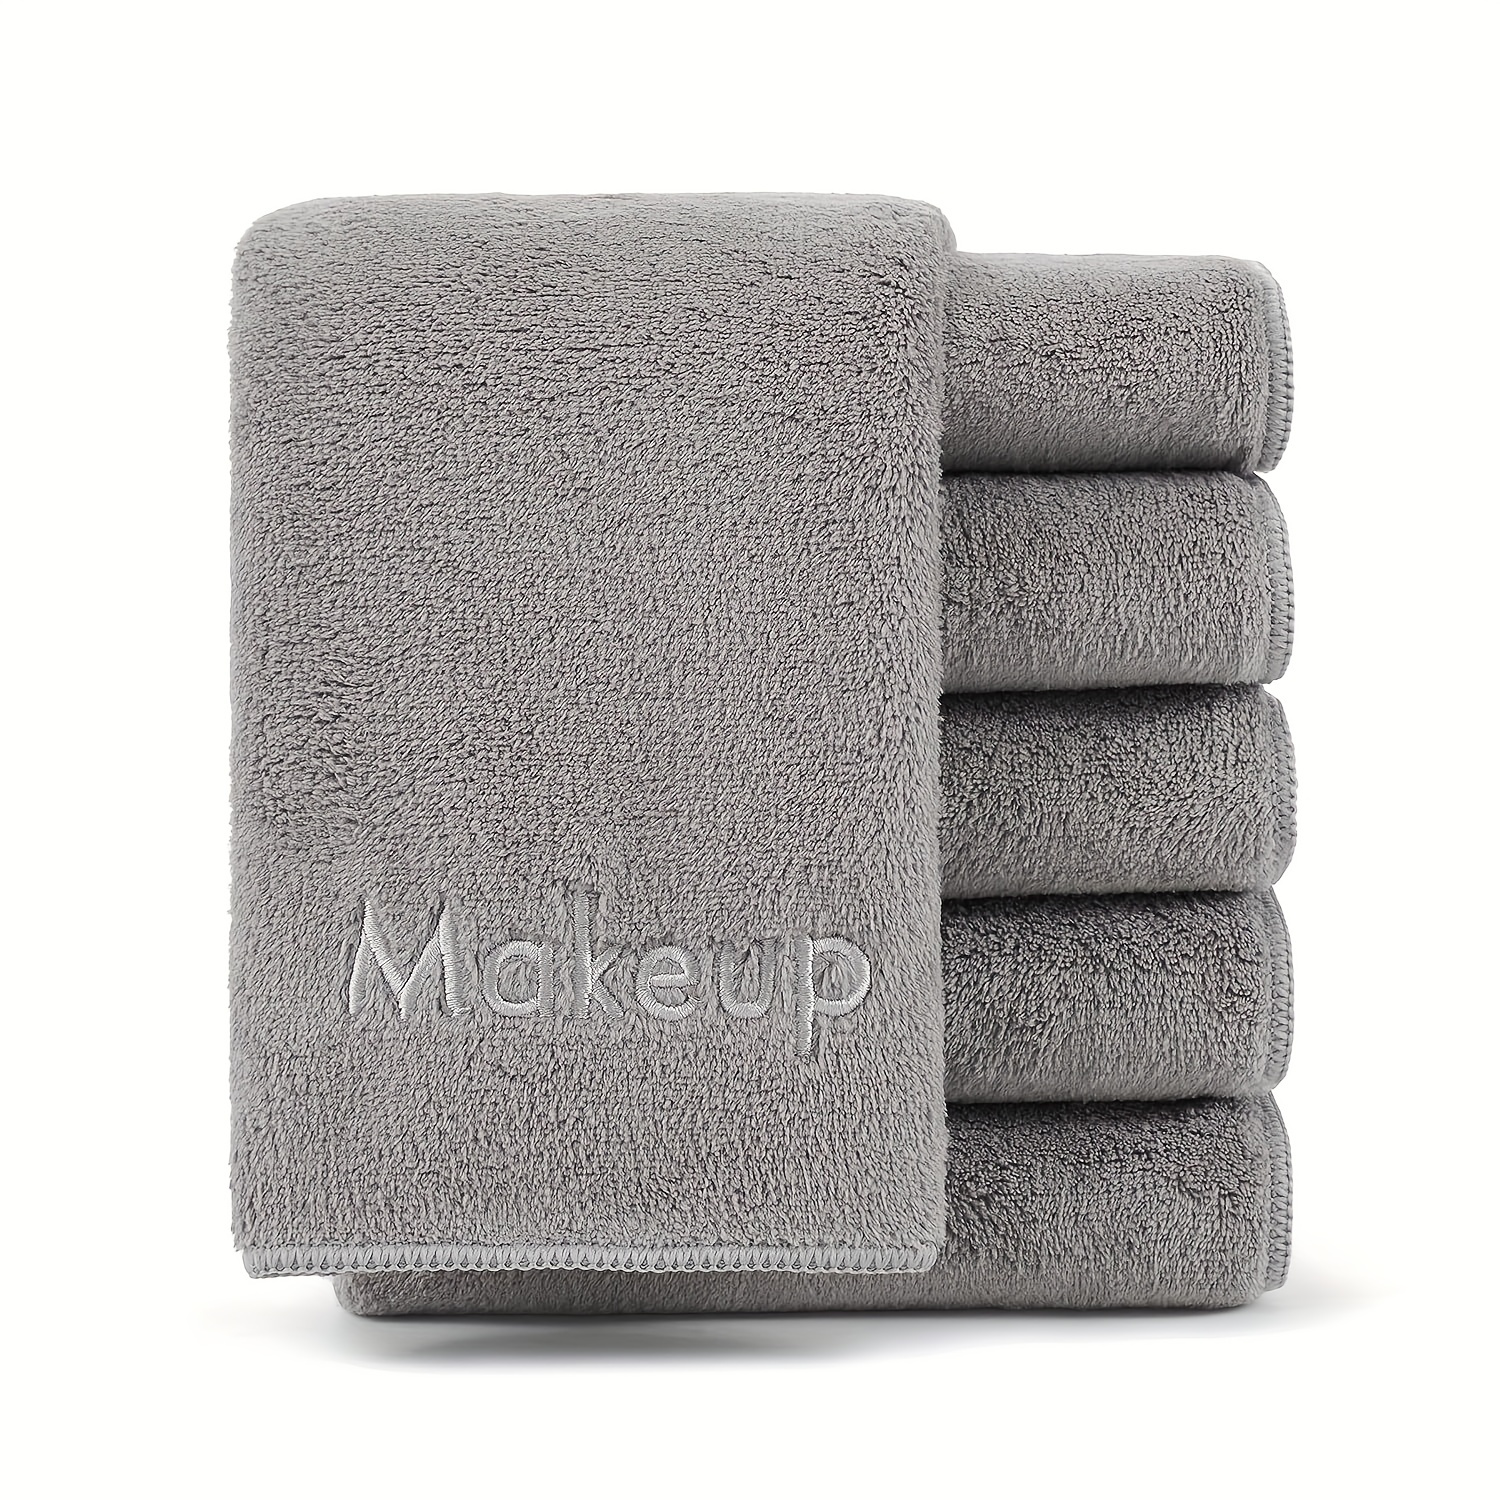 

5 Pack Démaquillant Lavage Tissu - Doux Corail Polaire Microfibre Serviette De Visage Pour Les Mains Et Le Maquillage